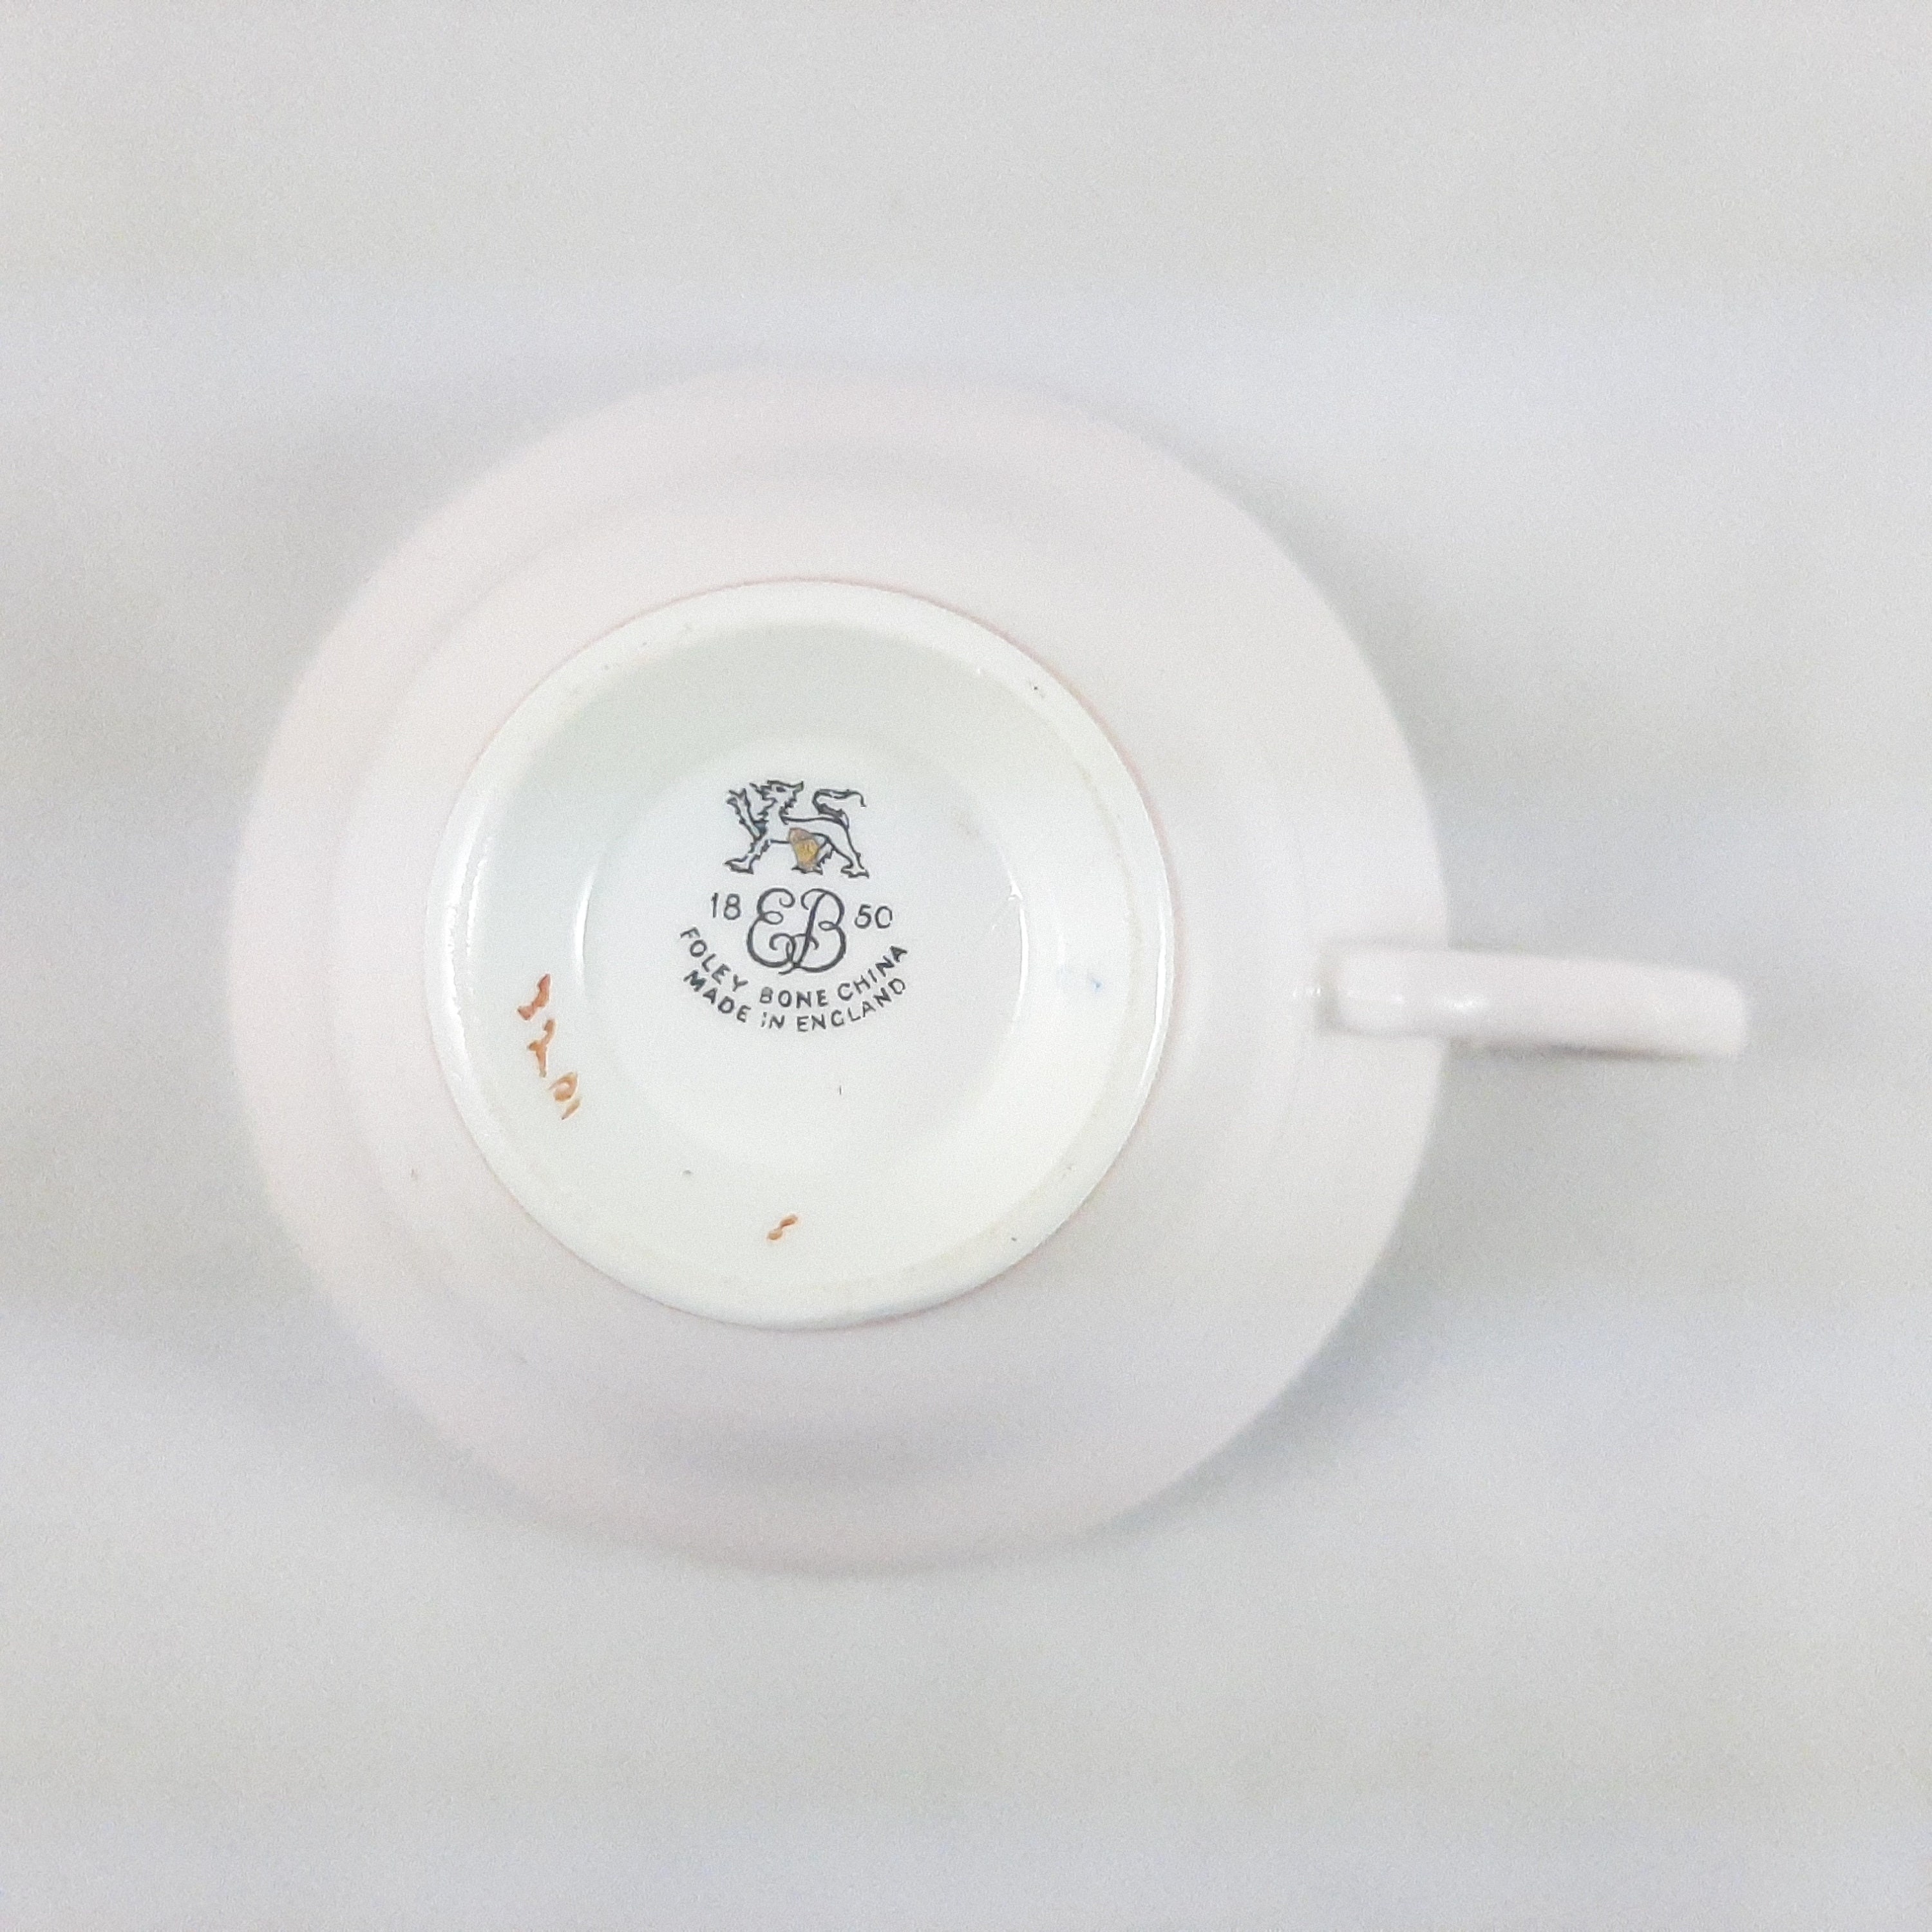 CXDTBH – Juego completo de vajilla de cerámica floral para